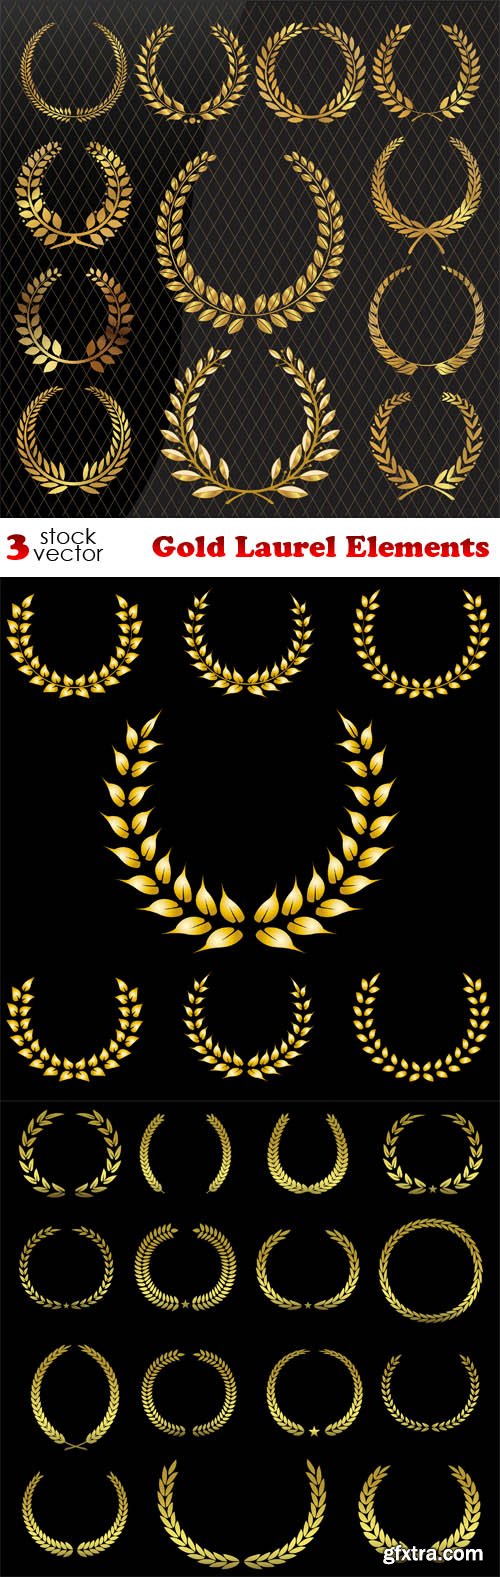 Vectors - Gold Laurel Elements